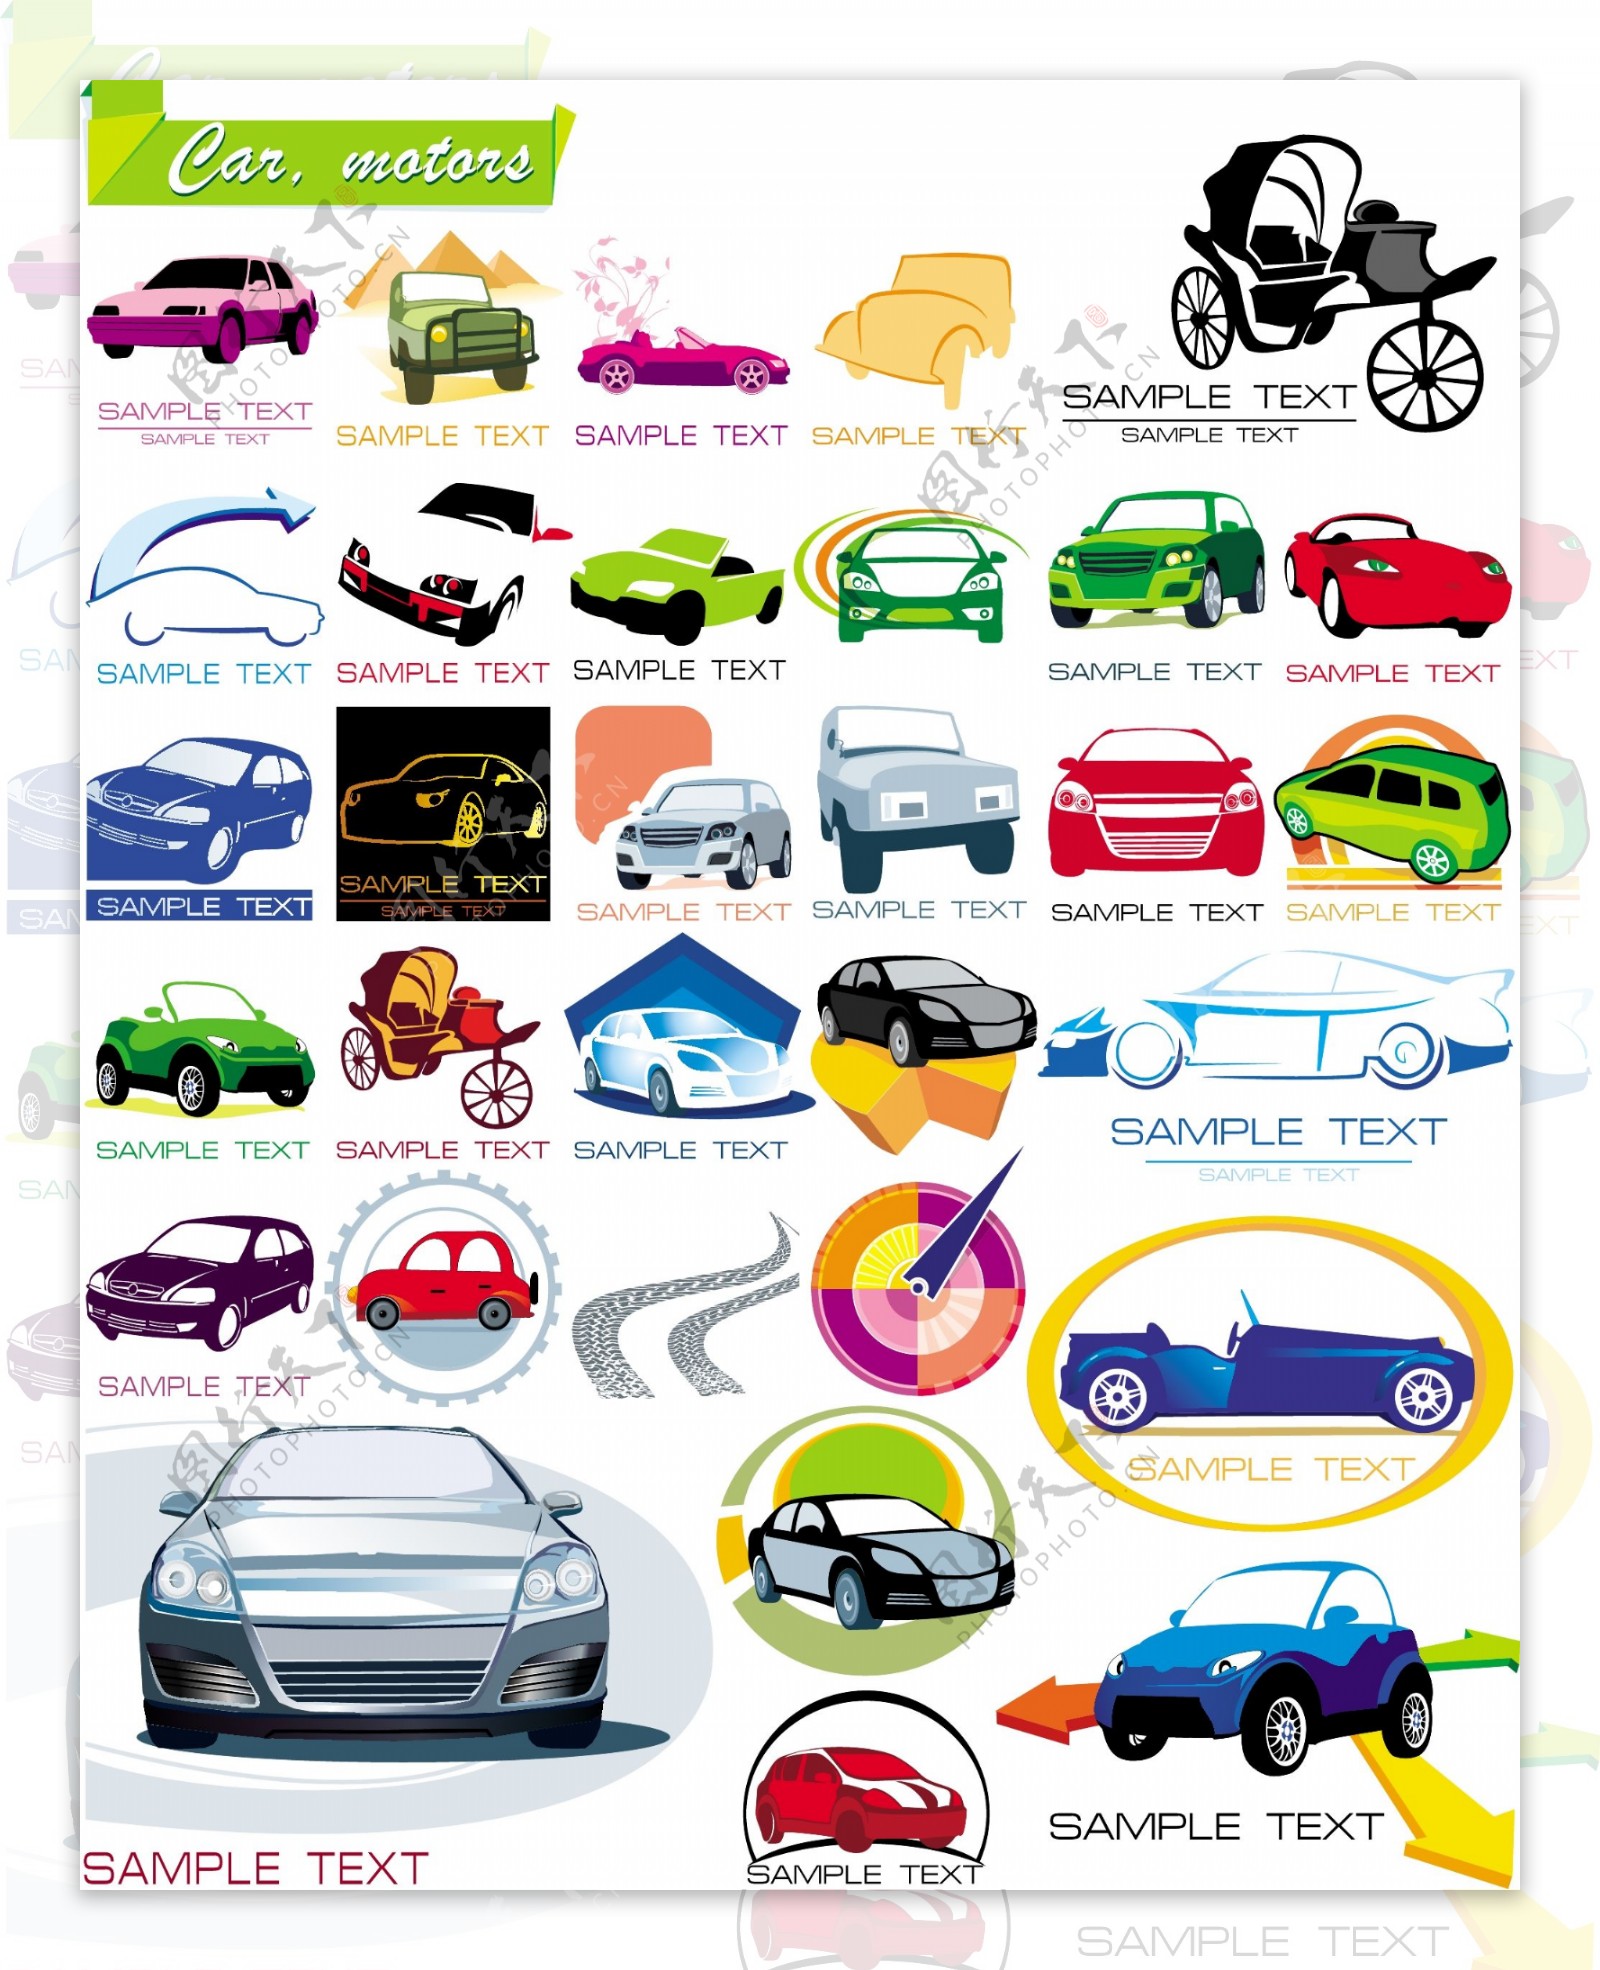 一些关于汽车的图形图标矢量素材